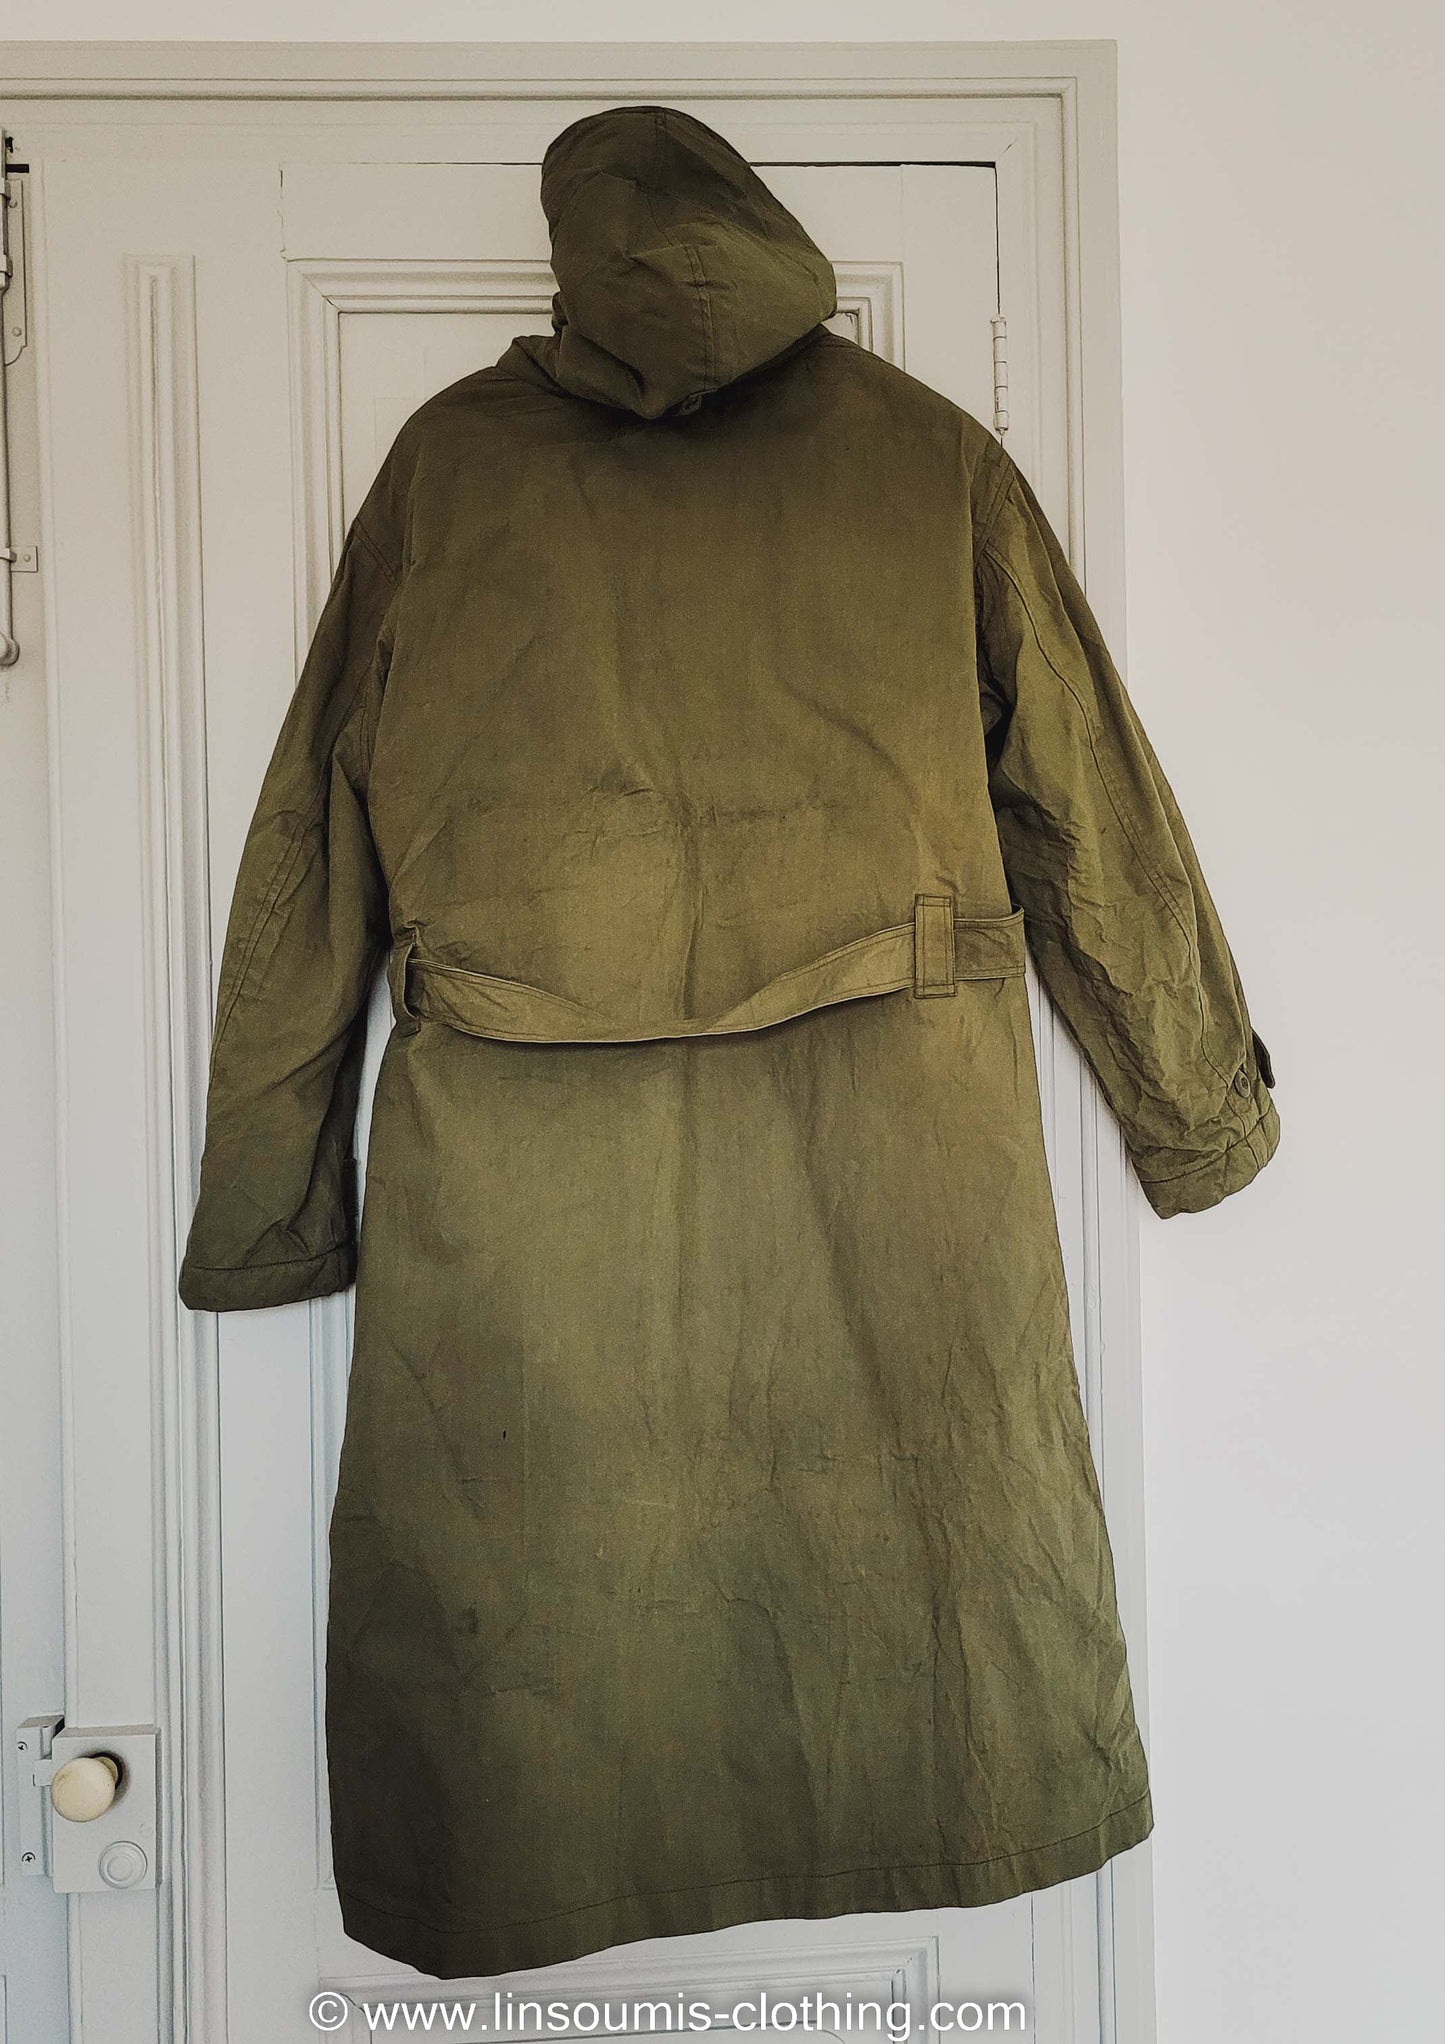 Rare NOS deadstock french navy coat like long N1 deck jacket / rare deadstock manteau de quart de la Marine nationale